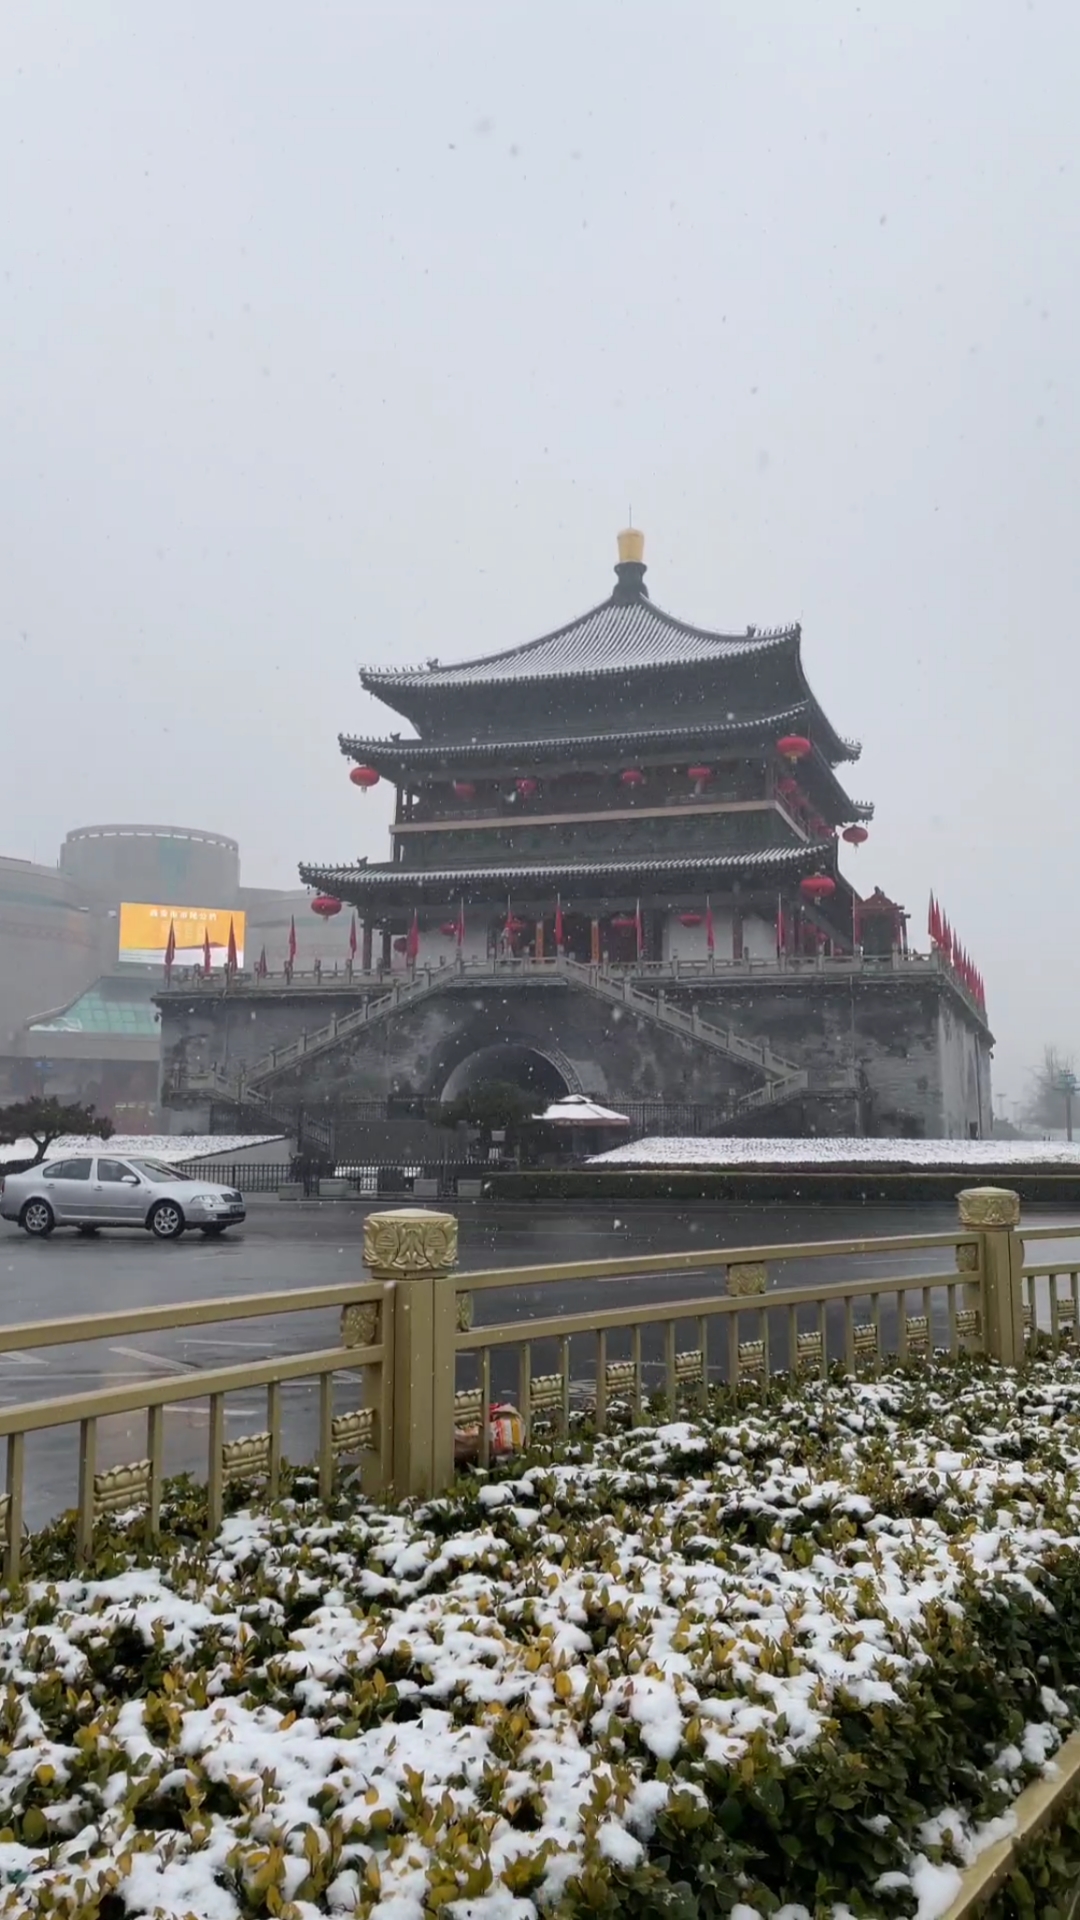 此刻的西安钟楼大雪纷飞,你们那里下雪了吗?